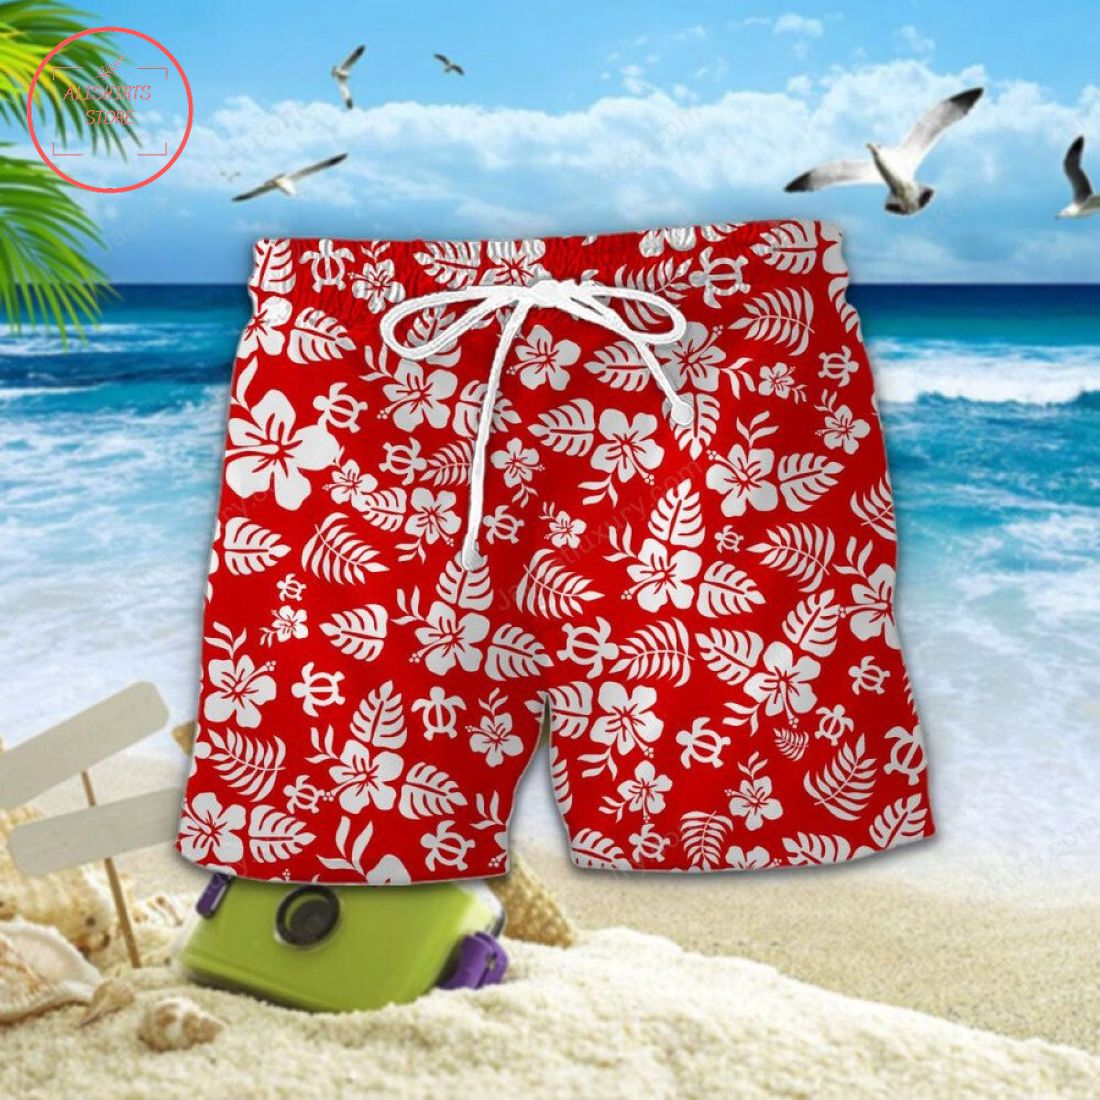 Stoke City FC Aloha Hawaiian Shirt and Beach Shorts